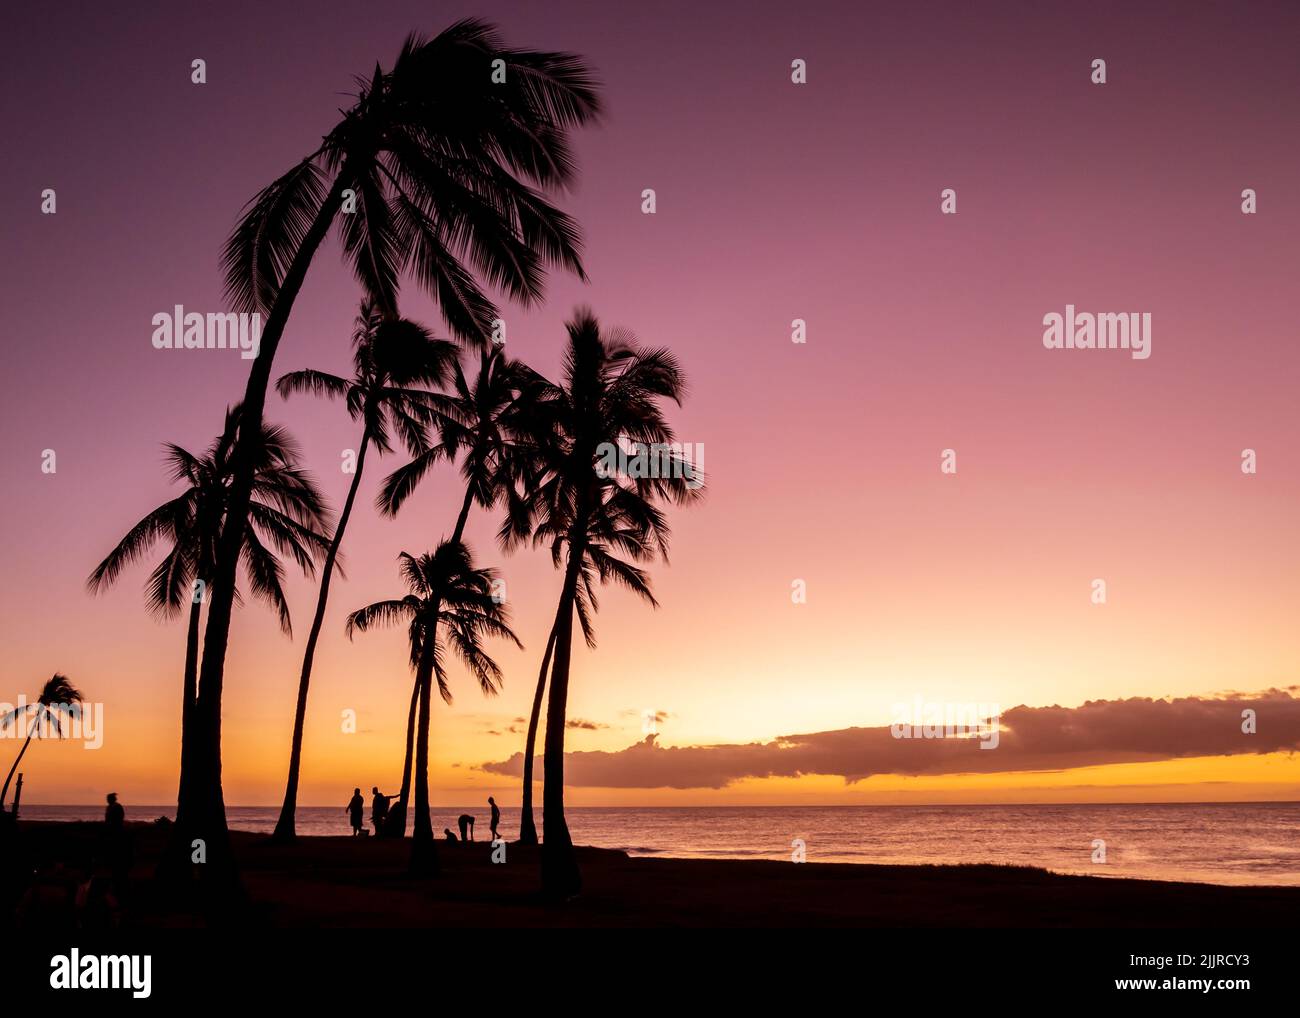 Una vista panoramica della silhouette di palme contro il cielo rosato al tramonto nelle Hawaii, o' ahu West Coast Foto Stock